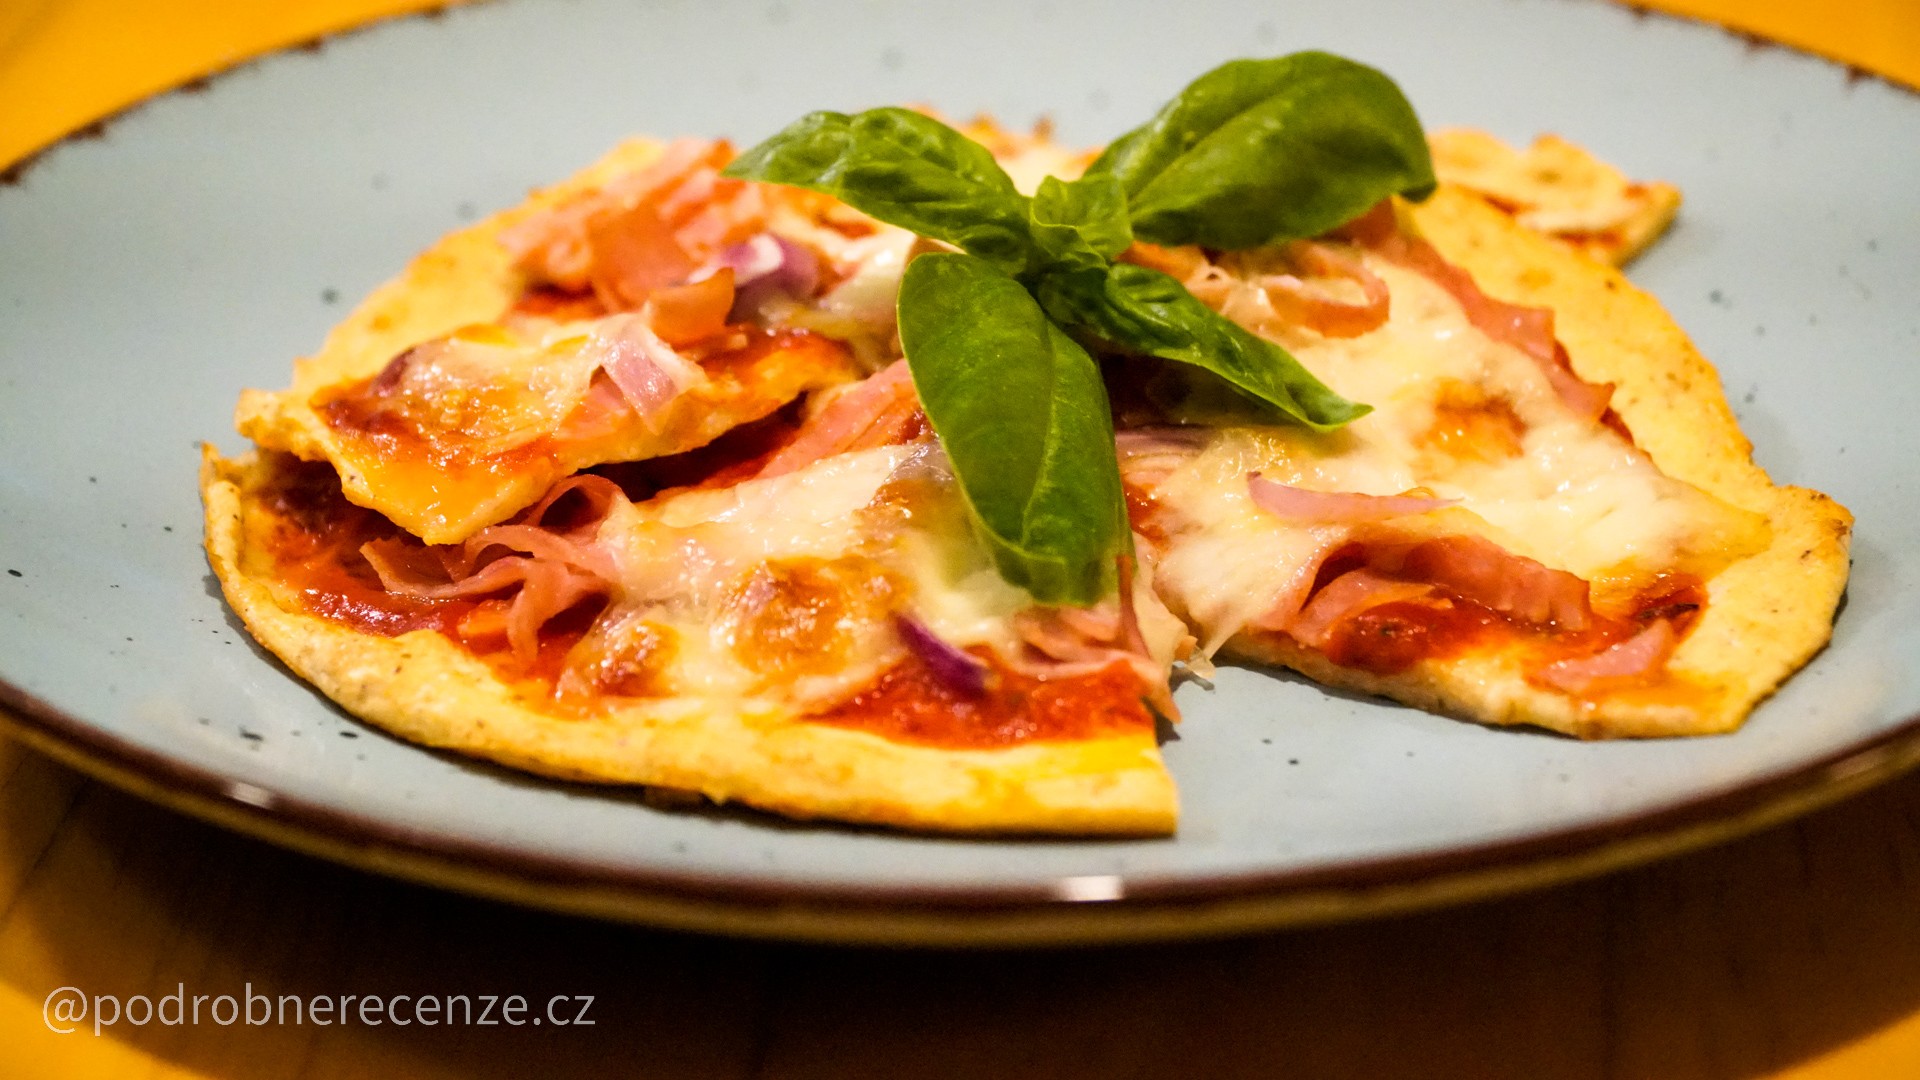 👩🏻‍🍳Recept: zdravá tvarohová pizza (lowcarb pizza) 🍕